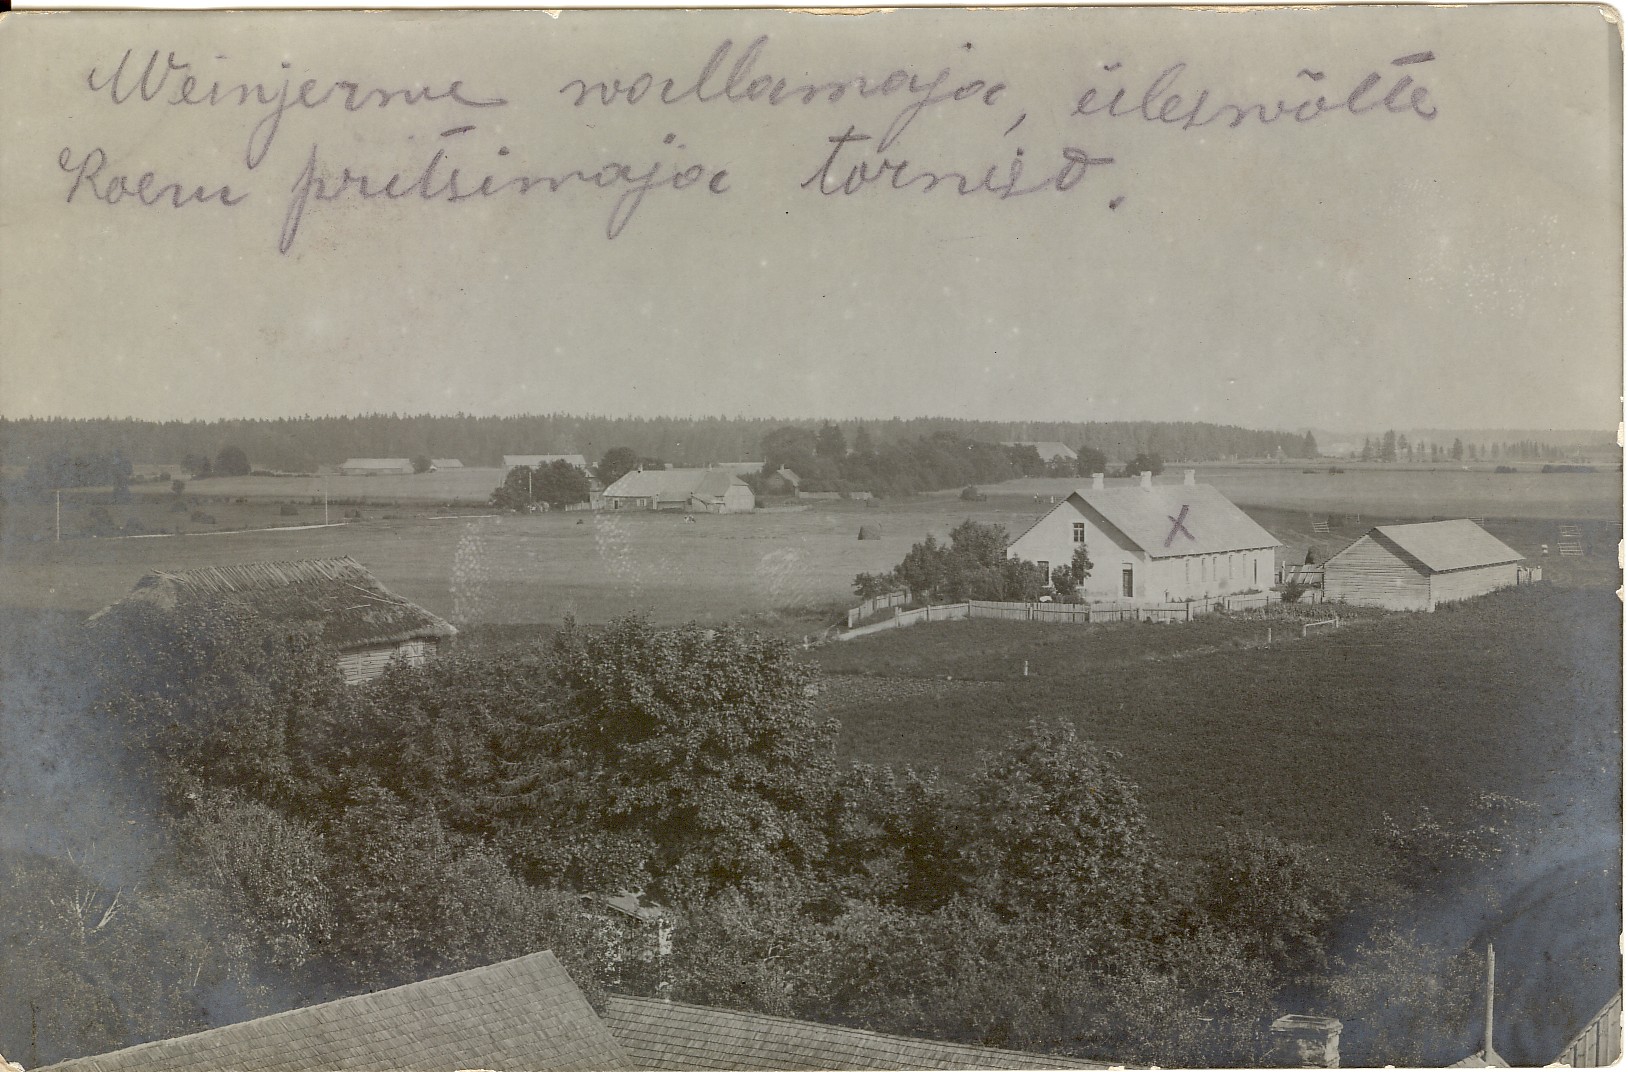 Väinjärve municipality